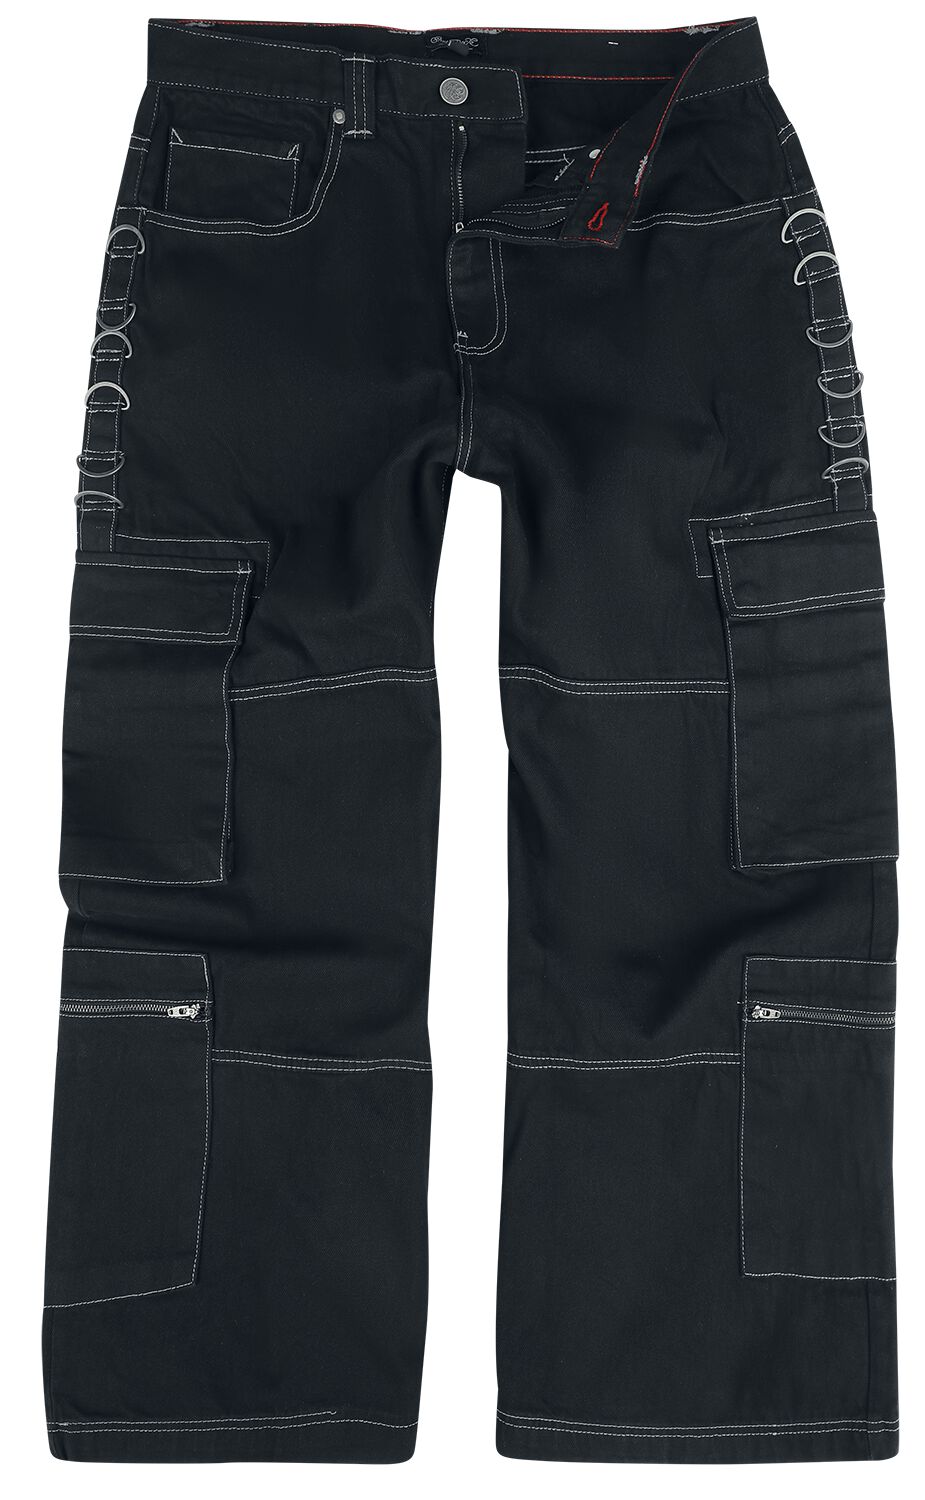 Chet Rock Jeans - Monaghan Utility Jeans - W30L32 bis W38L34 - für Männer - Größe W36L32 - schwarz von Chet Rock